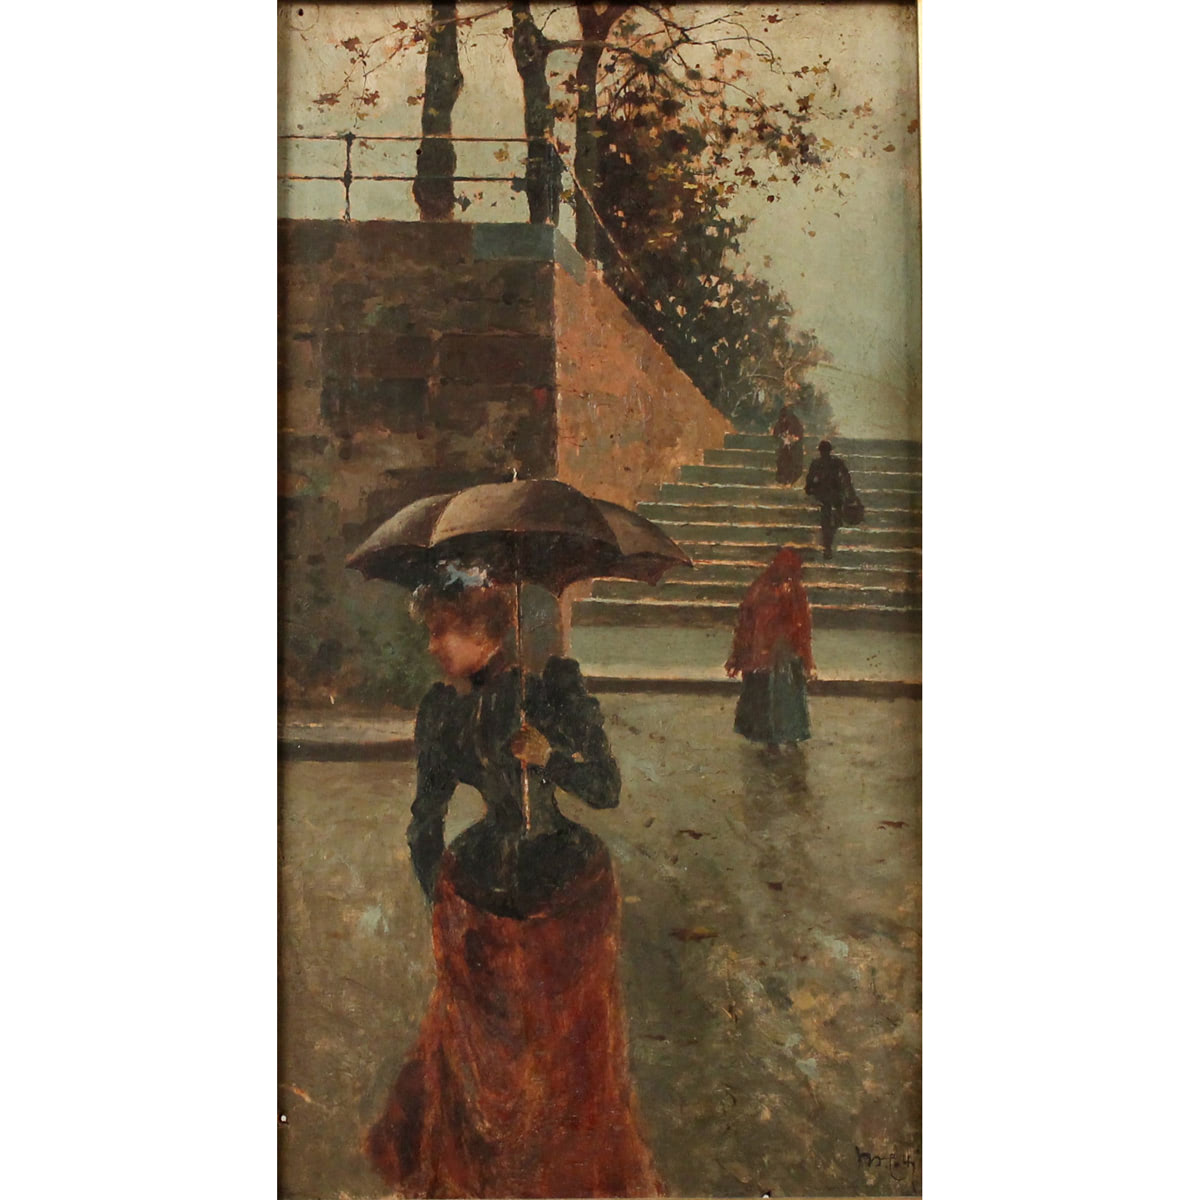 Michele Catti (1855/1914) "Donna con ombrello" - "Woman with Umbrella"